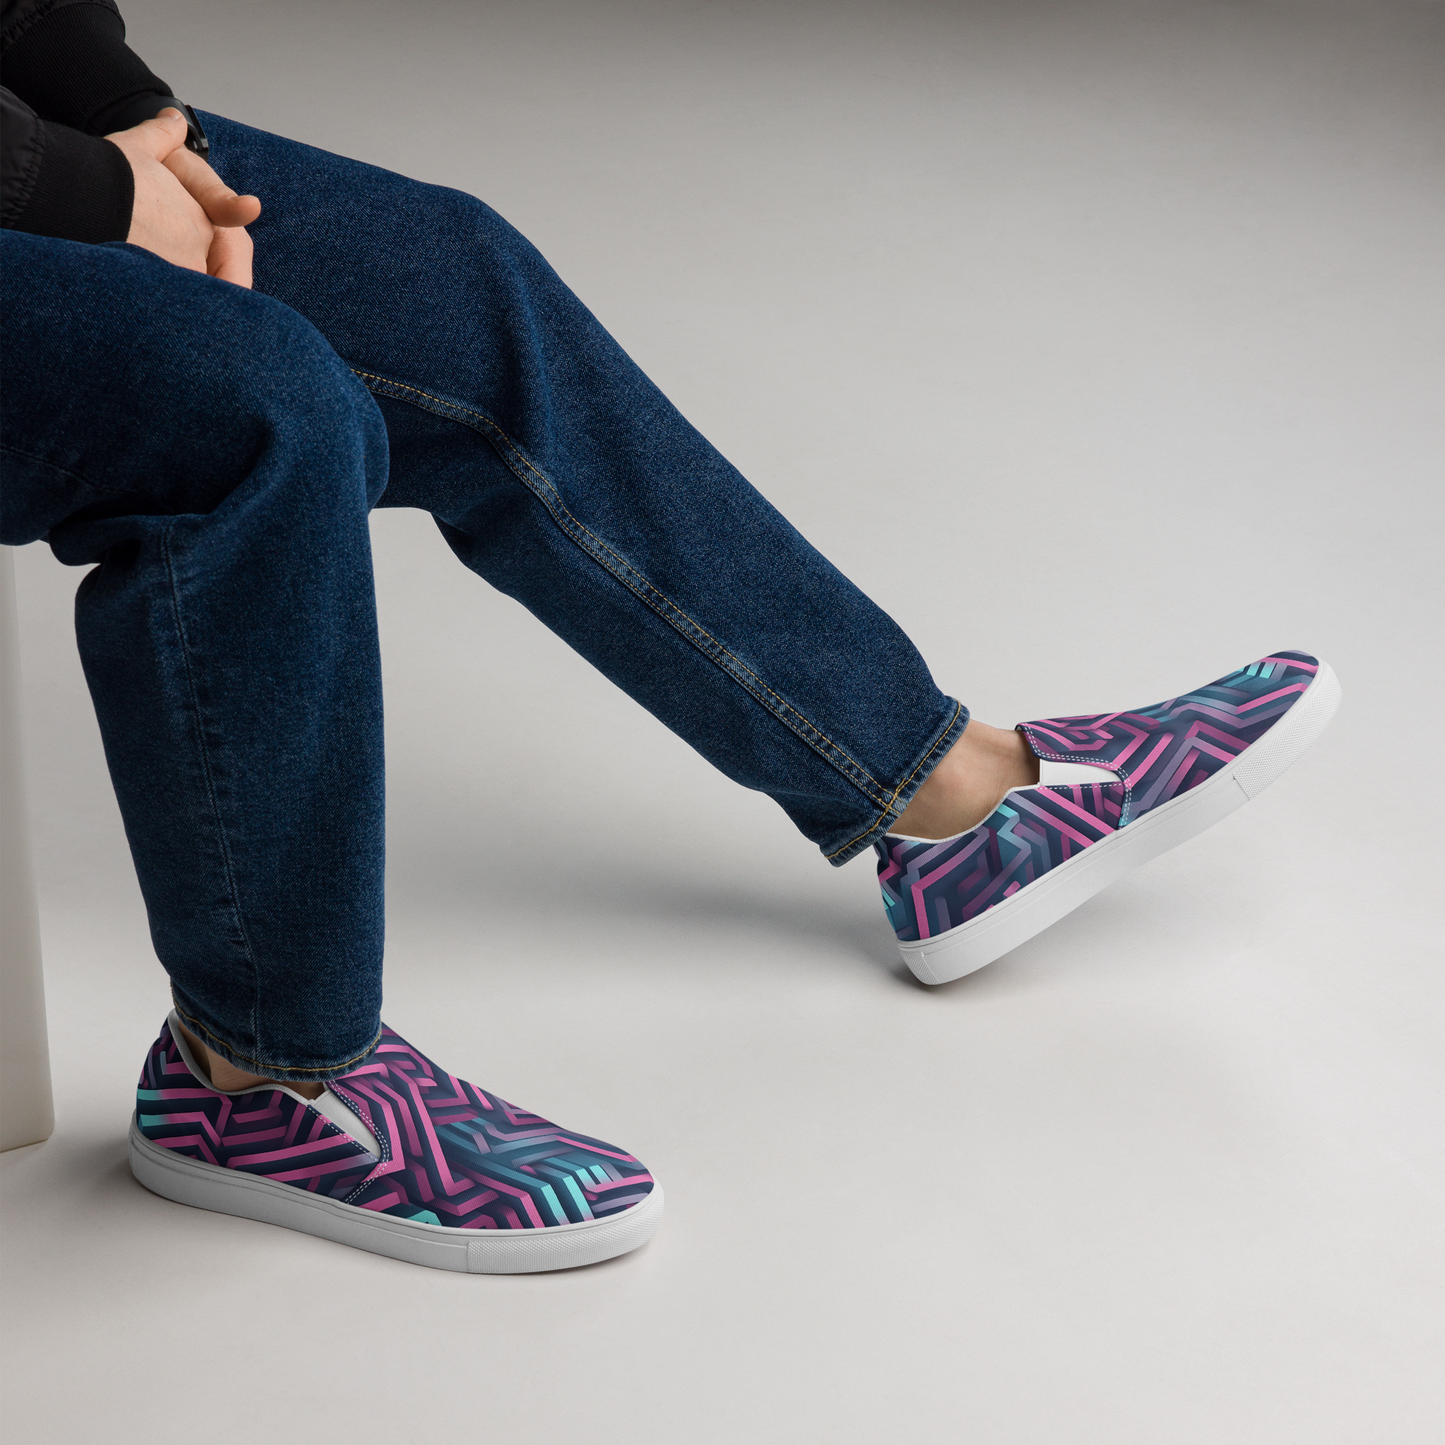 3D Maze Illusion | 3D Patterns | Men's Slip-On Canvas Shoes - #4